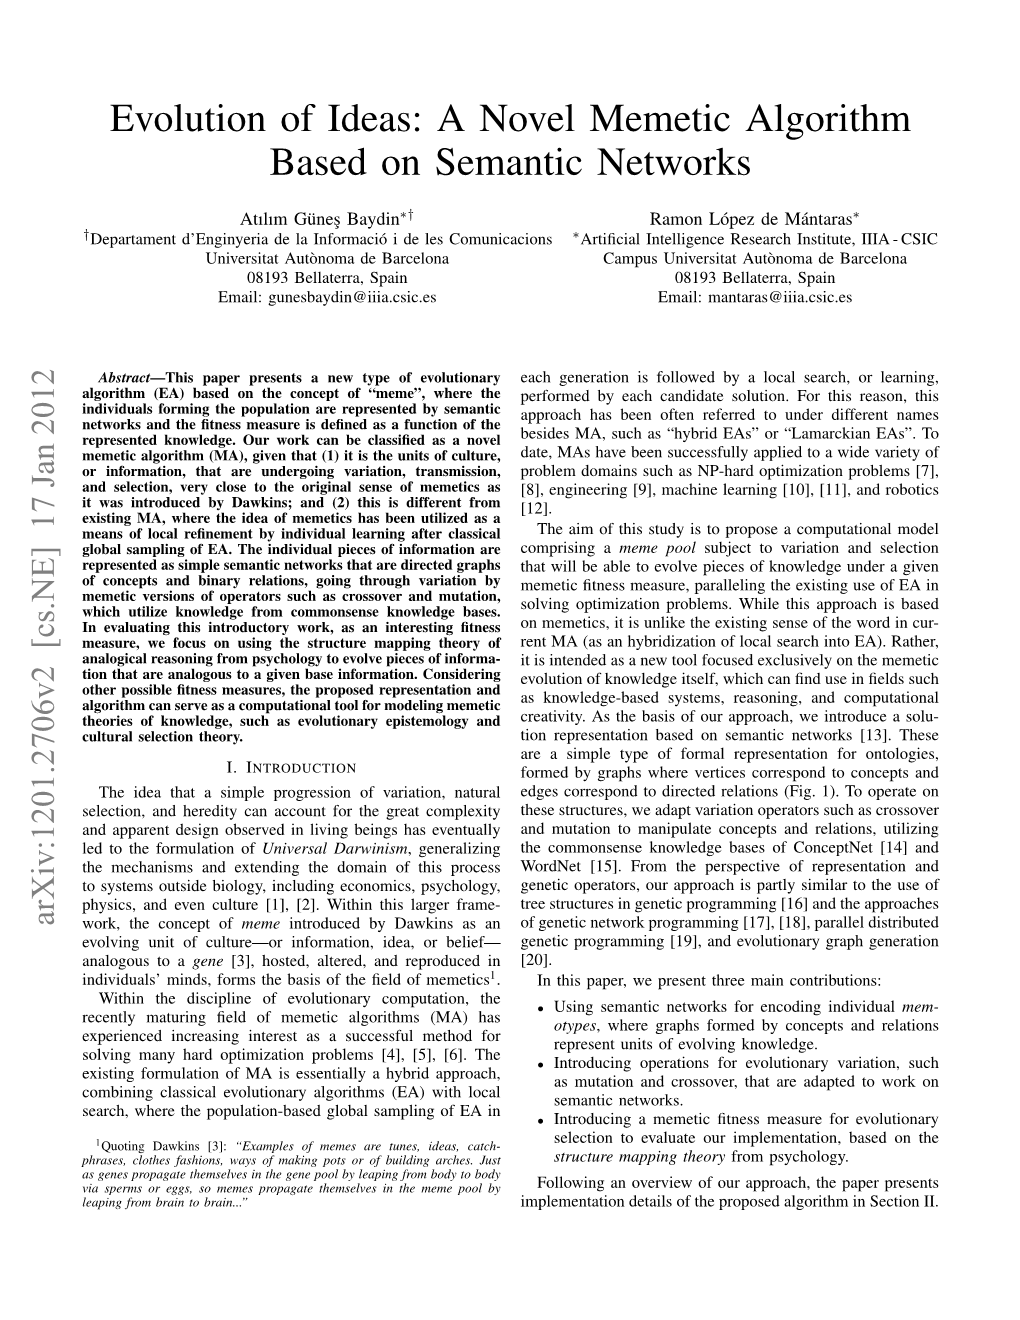 Evolution of Ideas: a Novel Memetic Algorithm Based on Semantic Networks